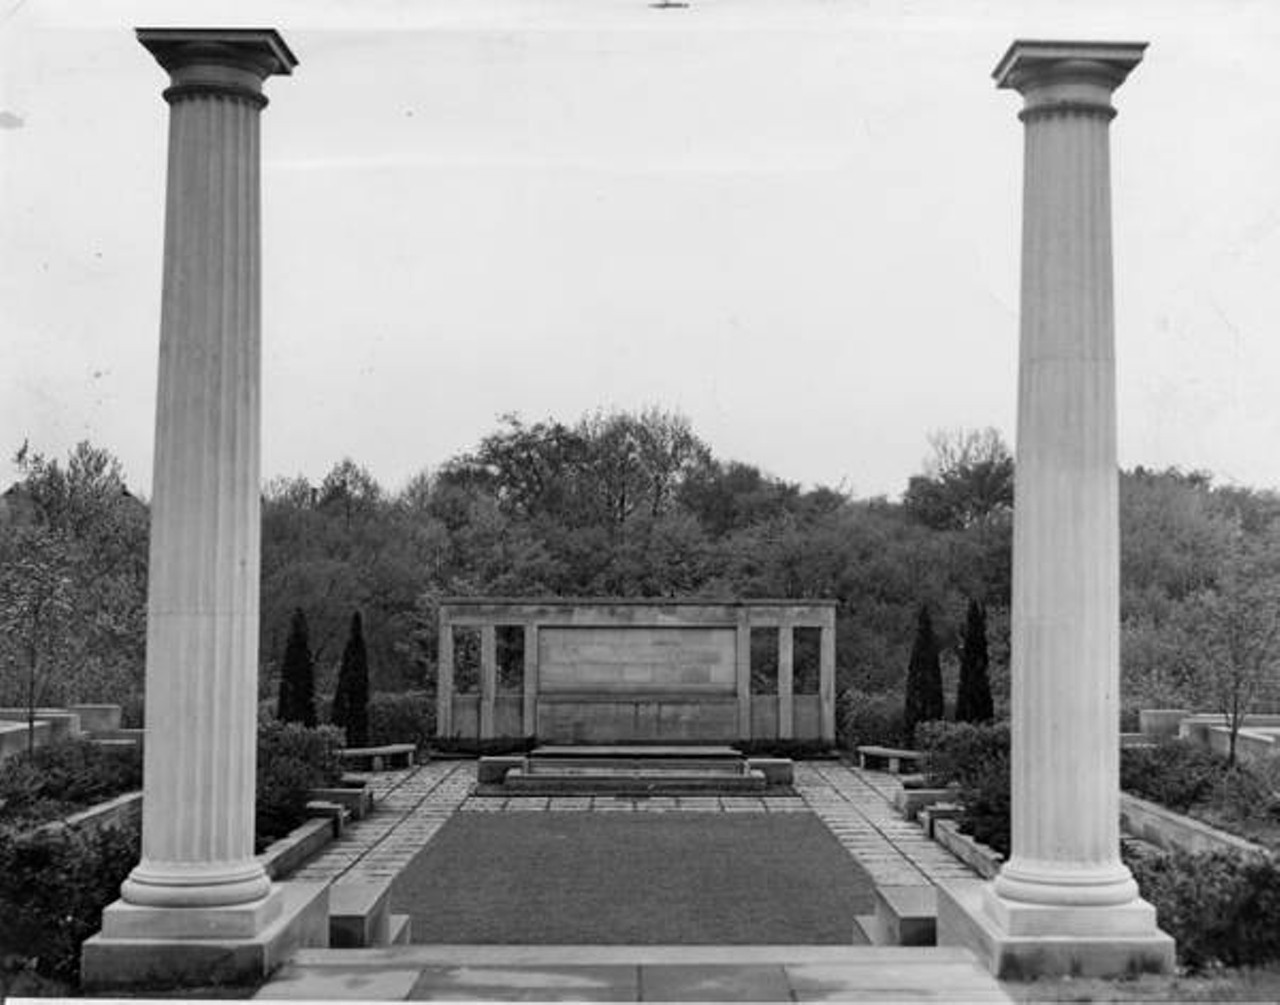 Greek Cultural Garden also referred to as Grecian Cultural Garden. c. 1940